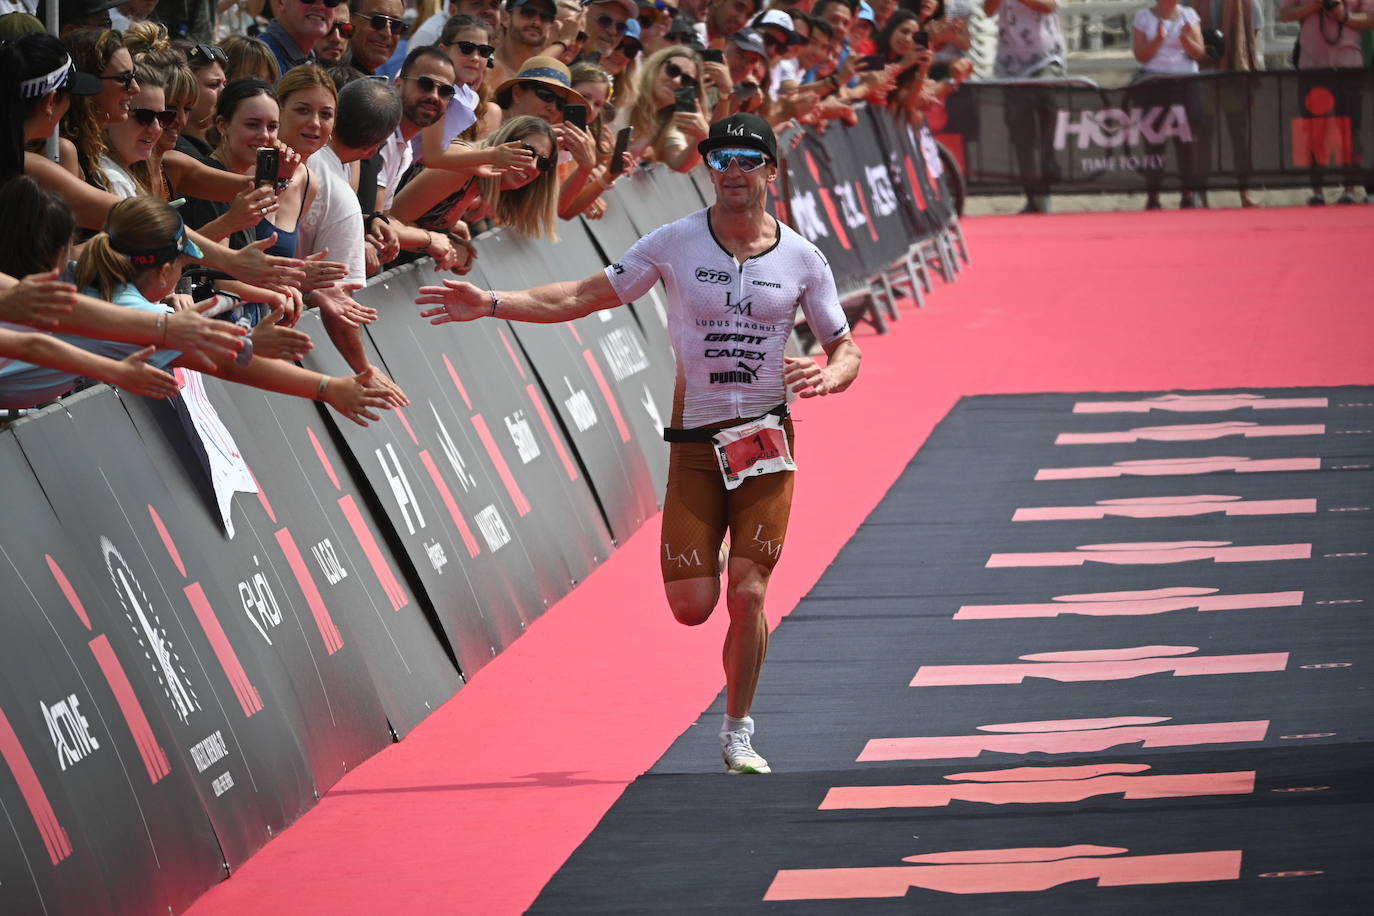 Fotos Las mejores imágenes del Ironman celebrado en Marbella Diario Sur